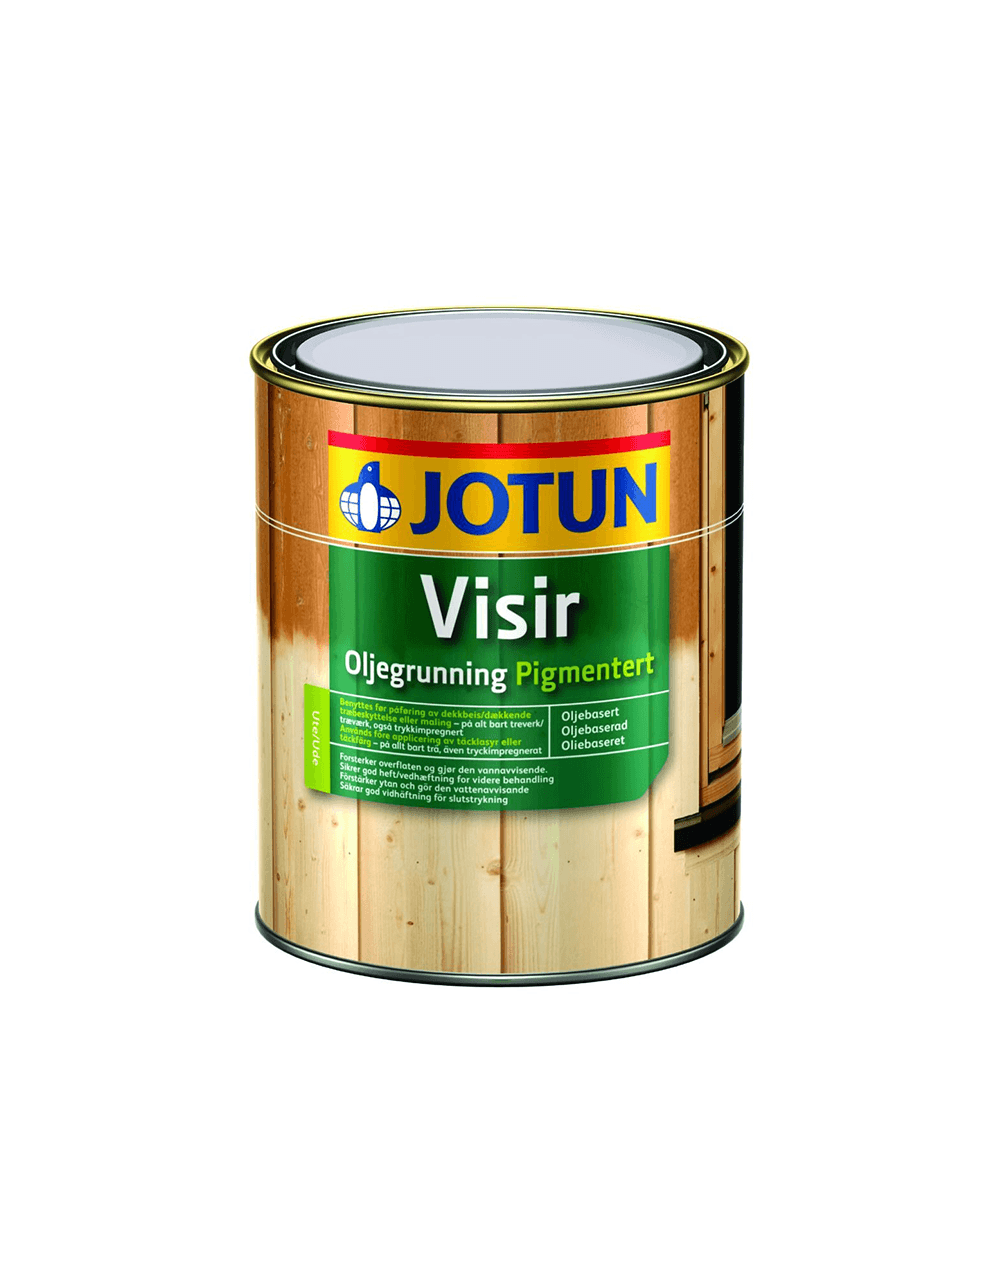 Jotun Visir Oliegrunding Pigmenteret - 9 L